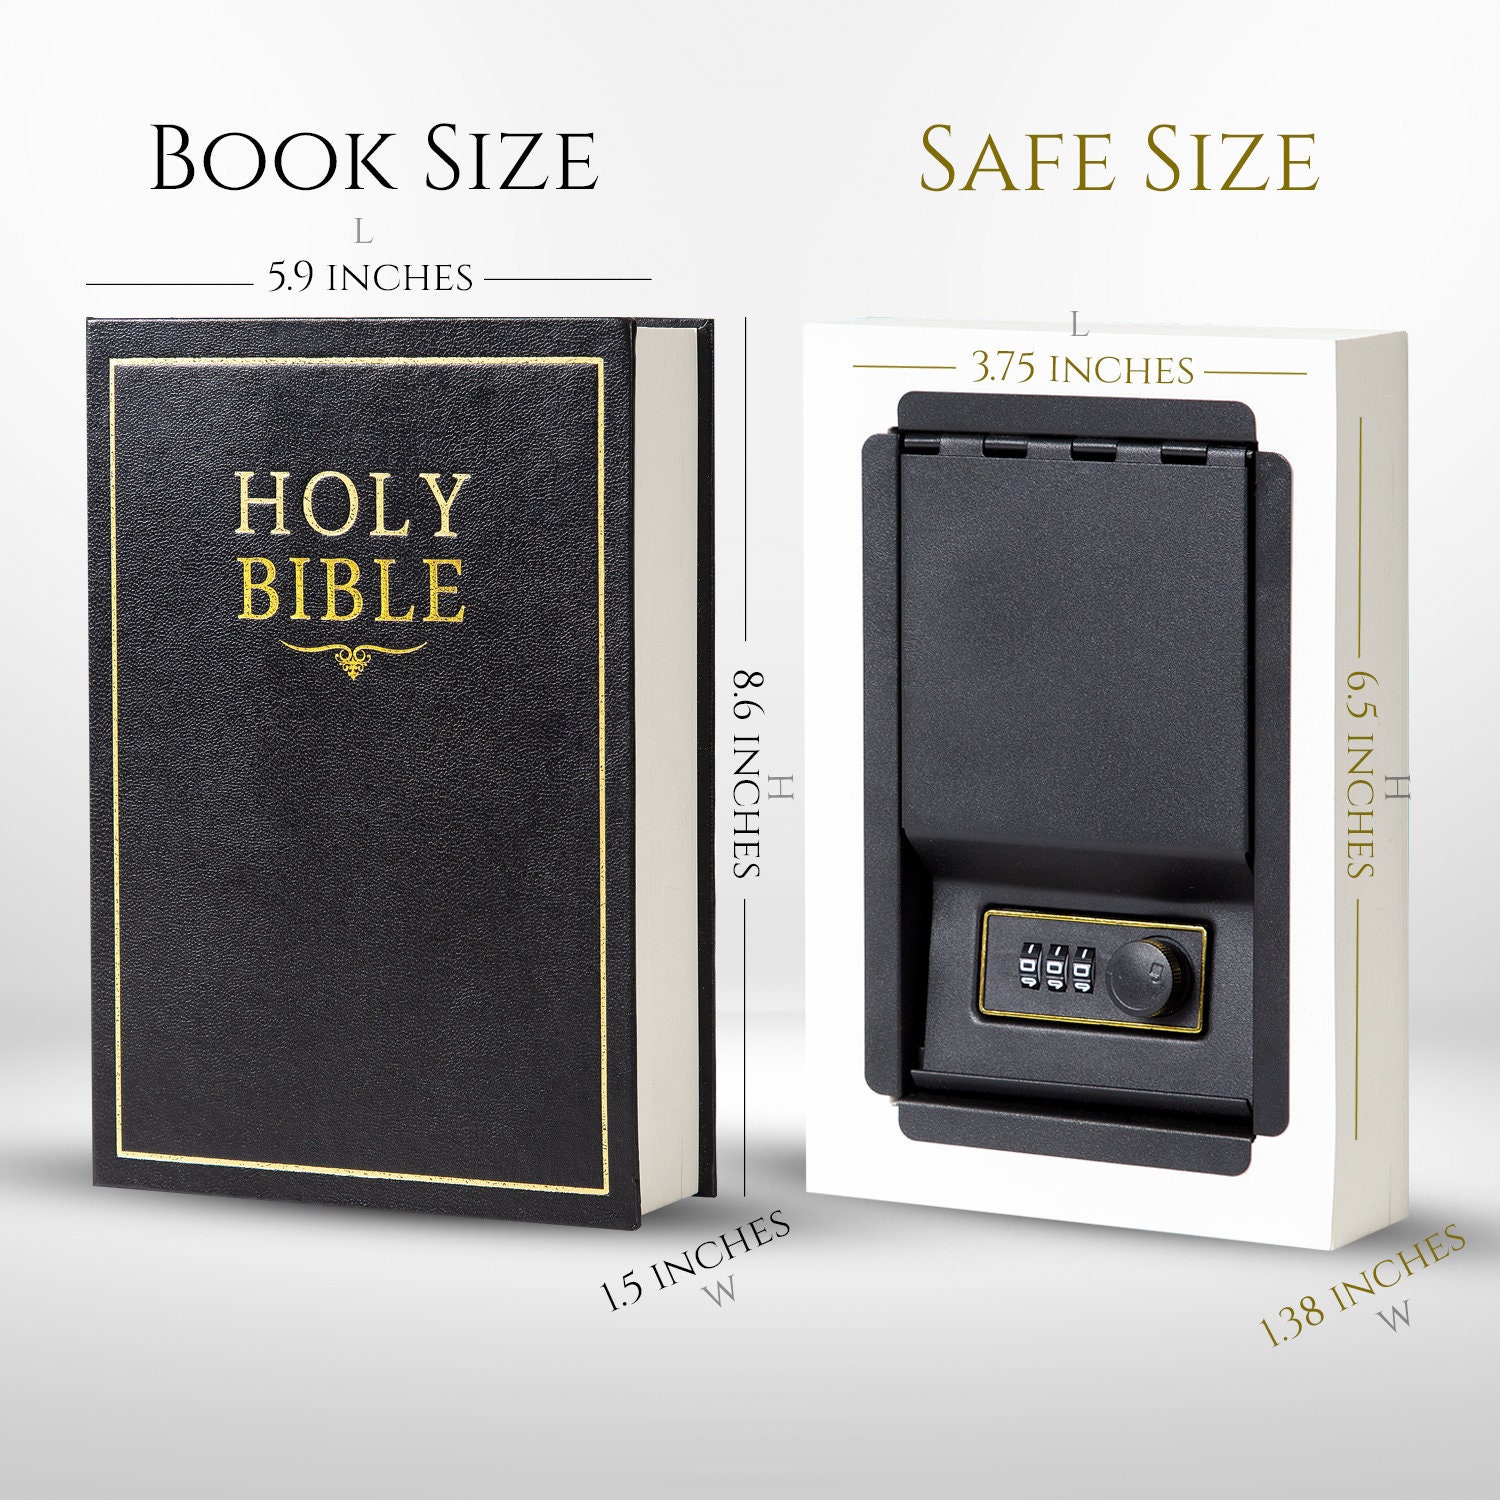 Diversion Book Safe with Combination Lock Hide Money Valuables Hidden Secret Box 